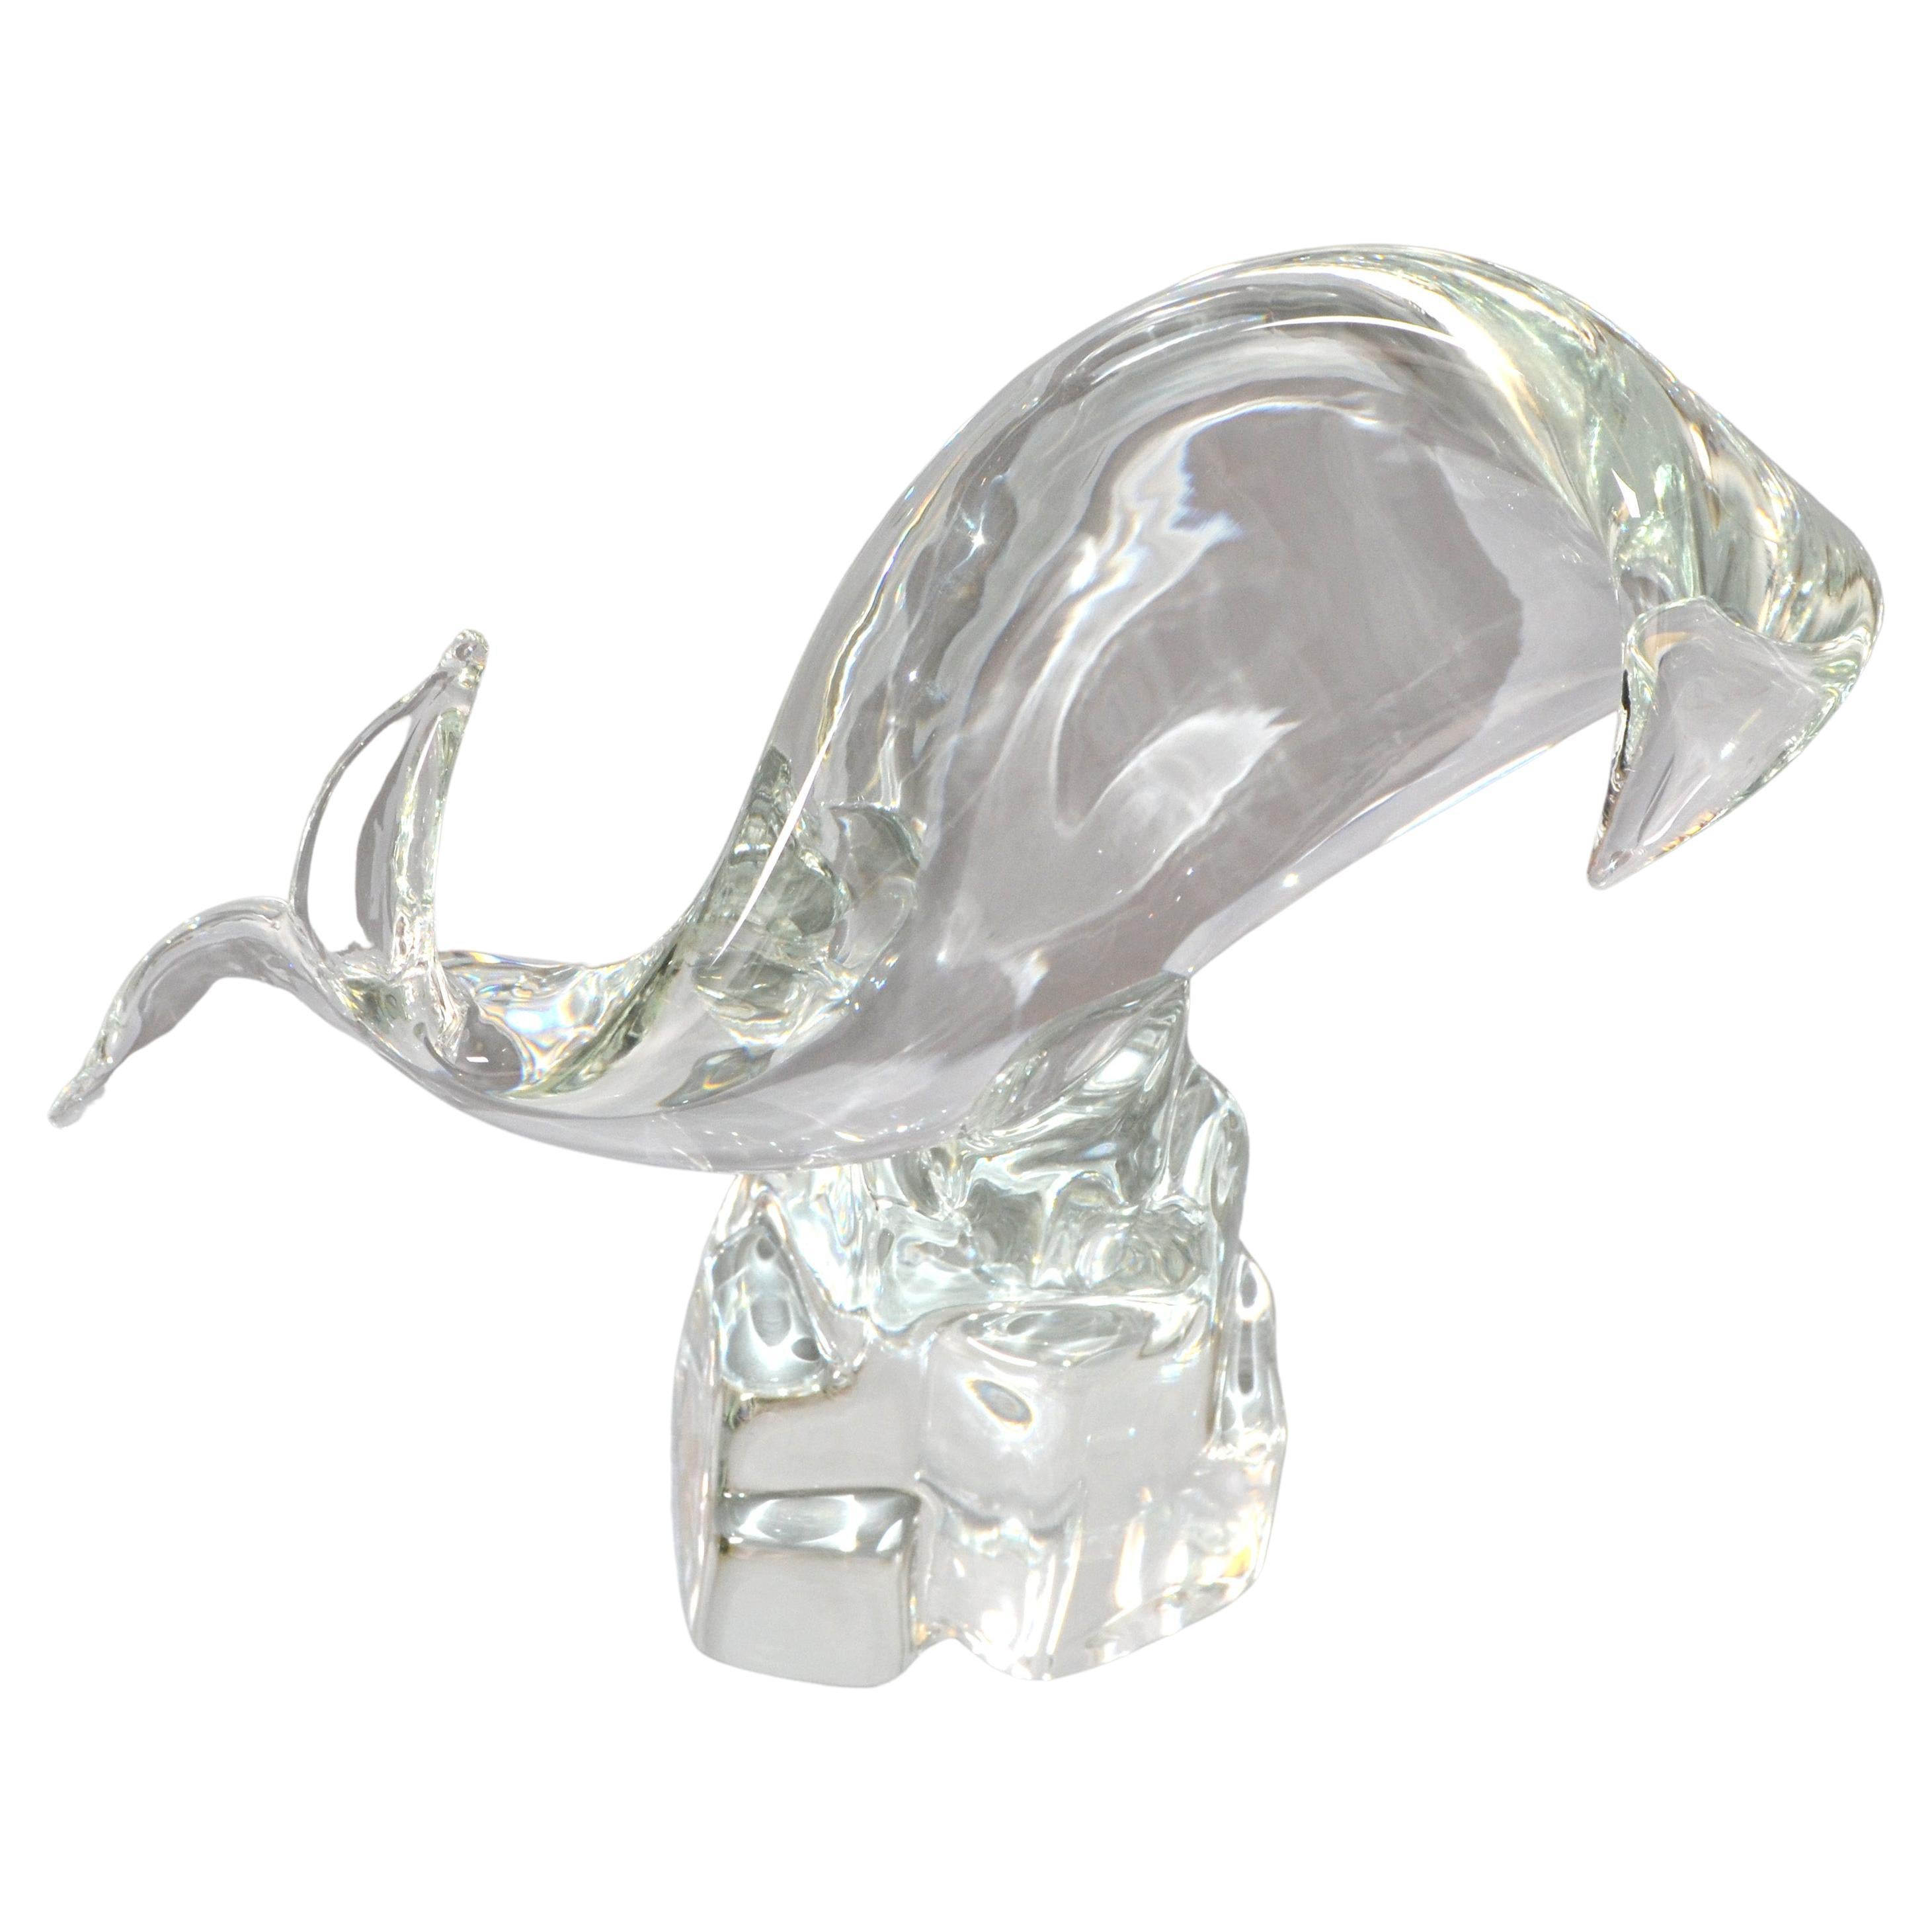 Licio Zanetti Abstract Murano Glass Fish, Whale or Dolphin Sculpture on Rock